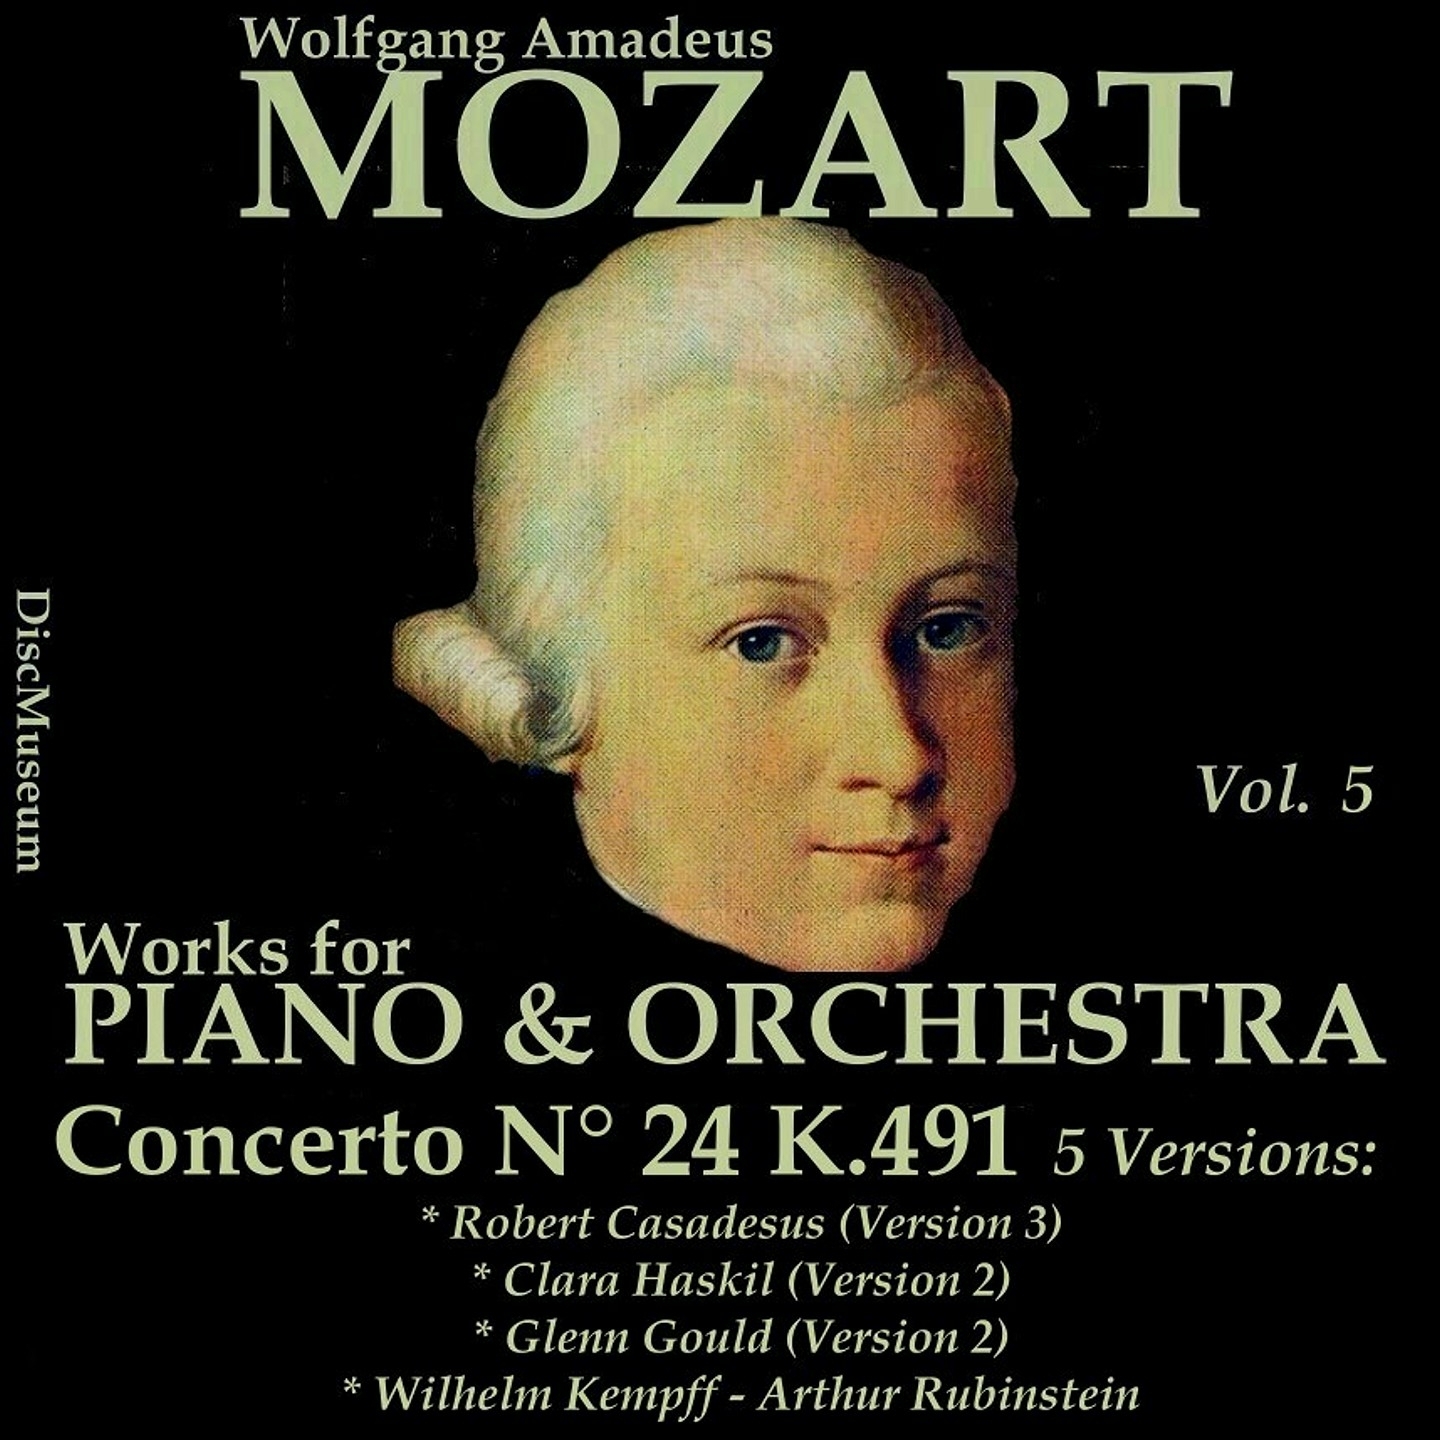 Concerto No. 24 for Piano and Orchestra in C Minor, K491: III. Cadenza Wilhelm Kempff, Allegretto